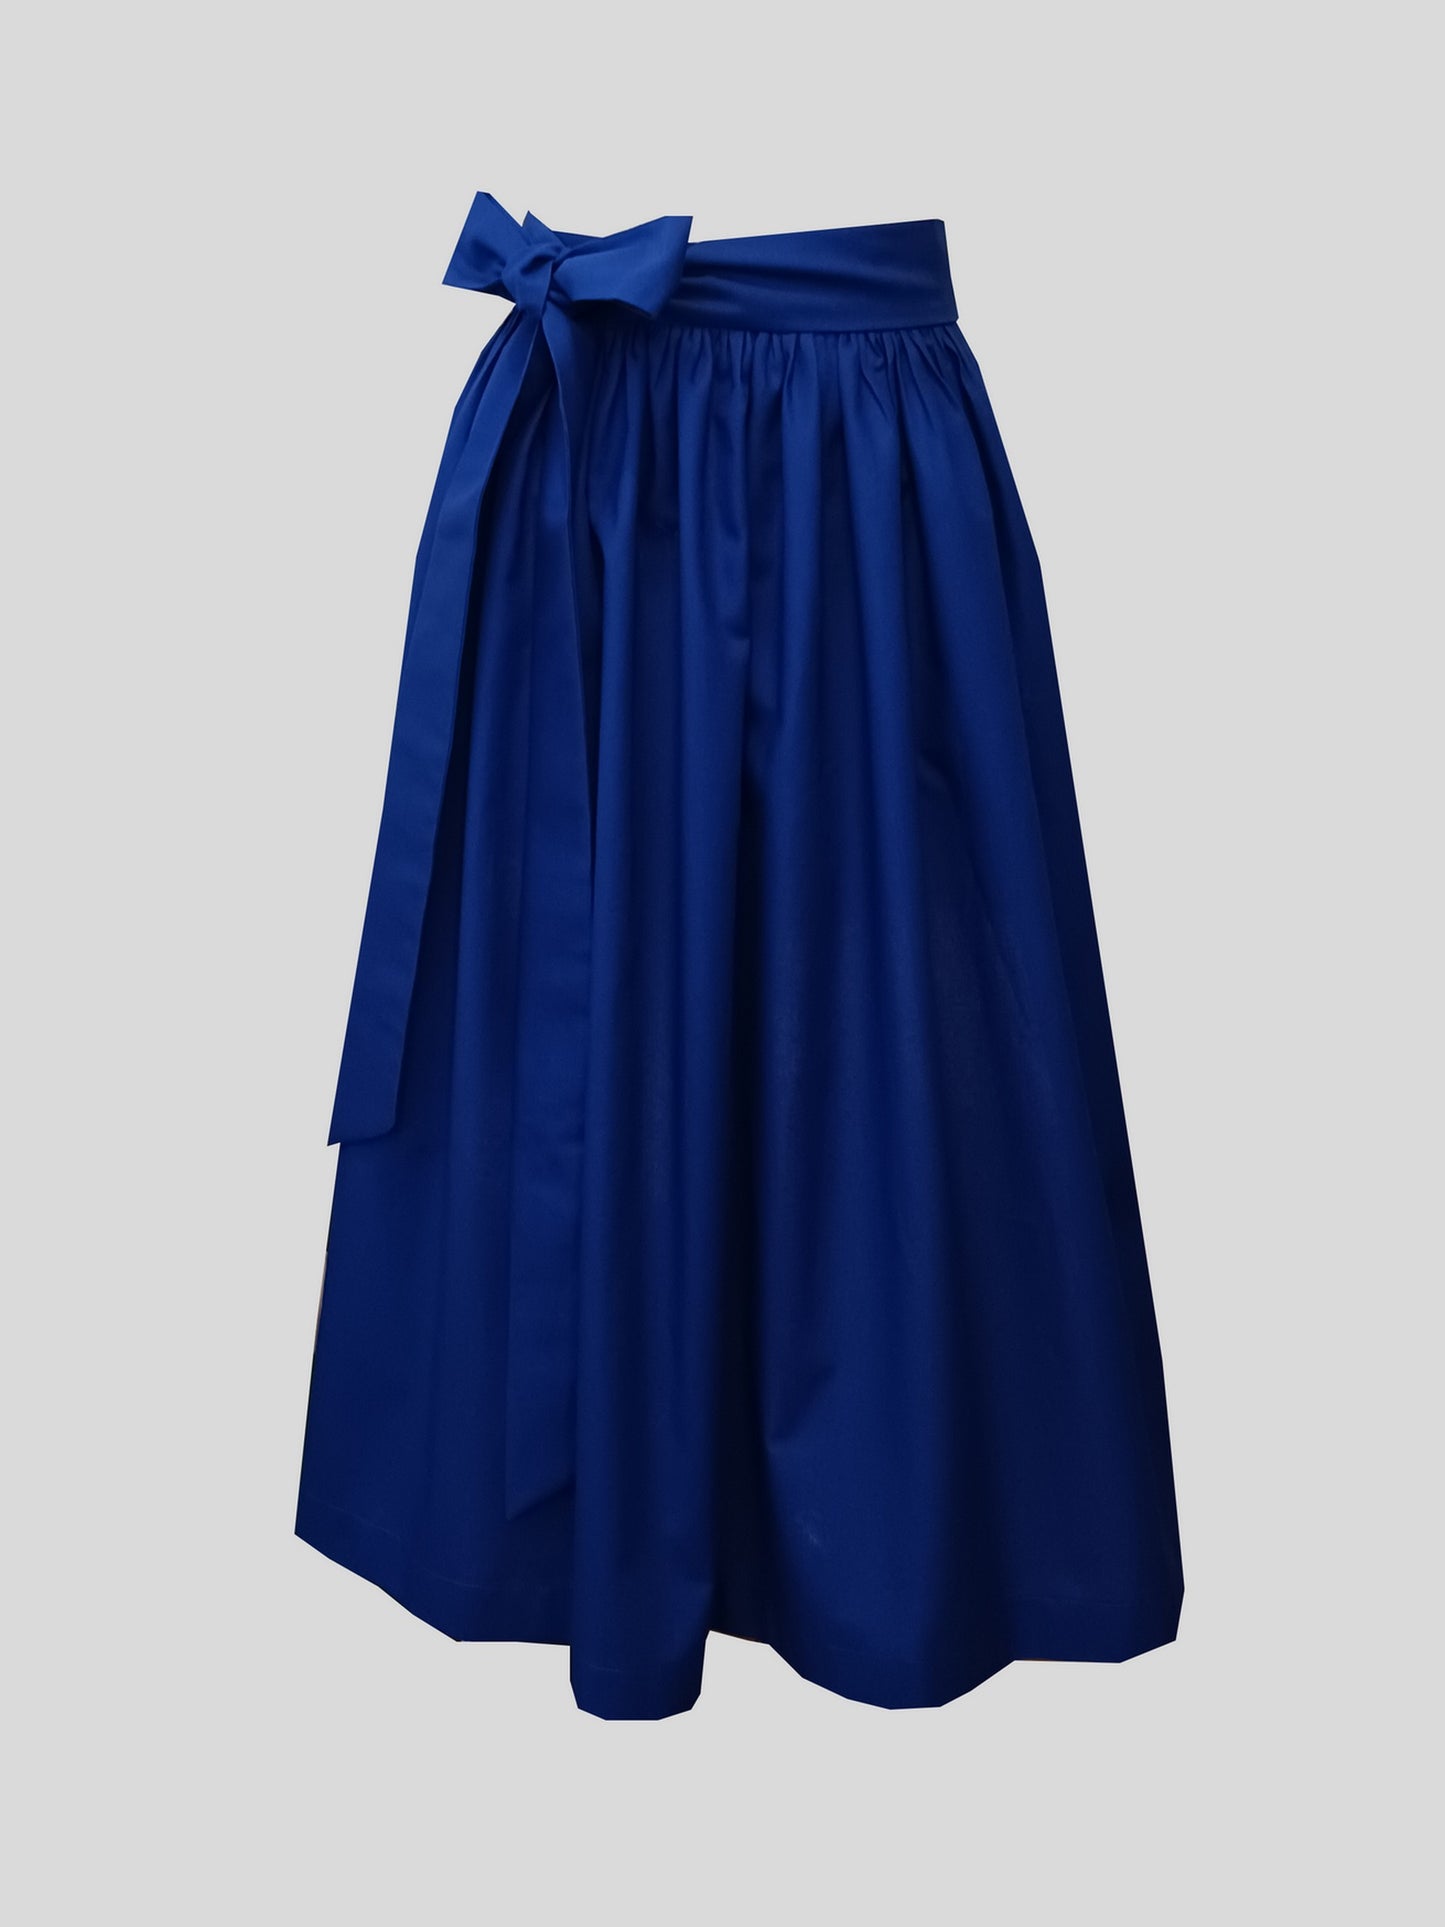 Ladies dirndl apron cotton royal blue